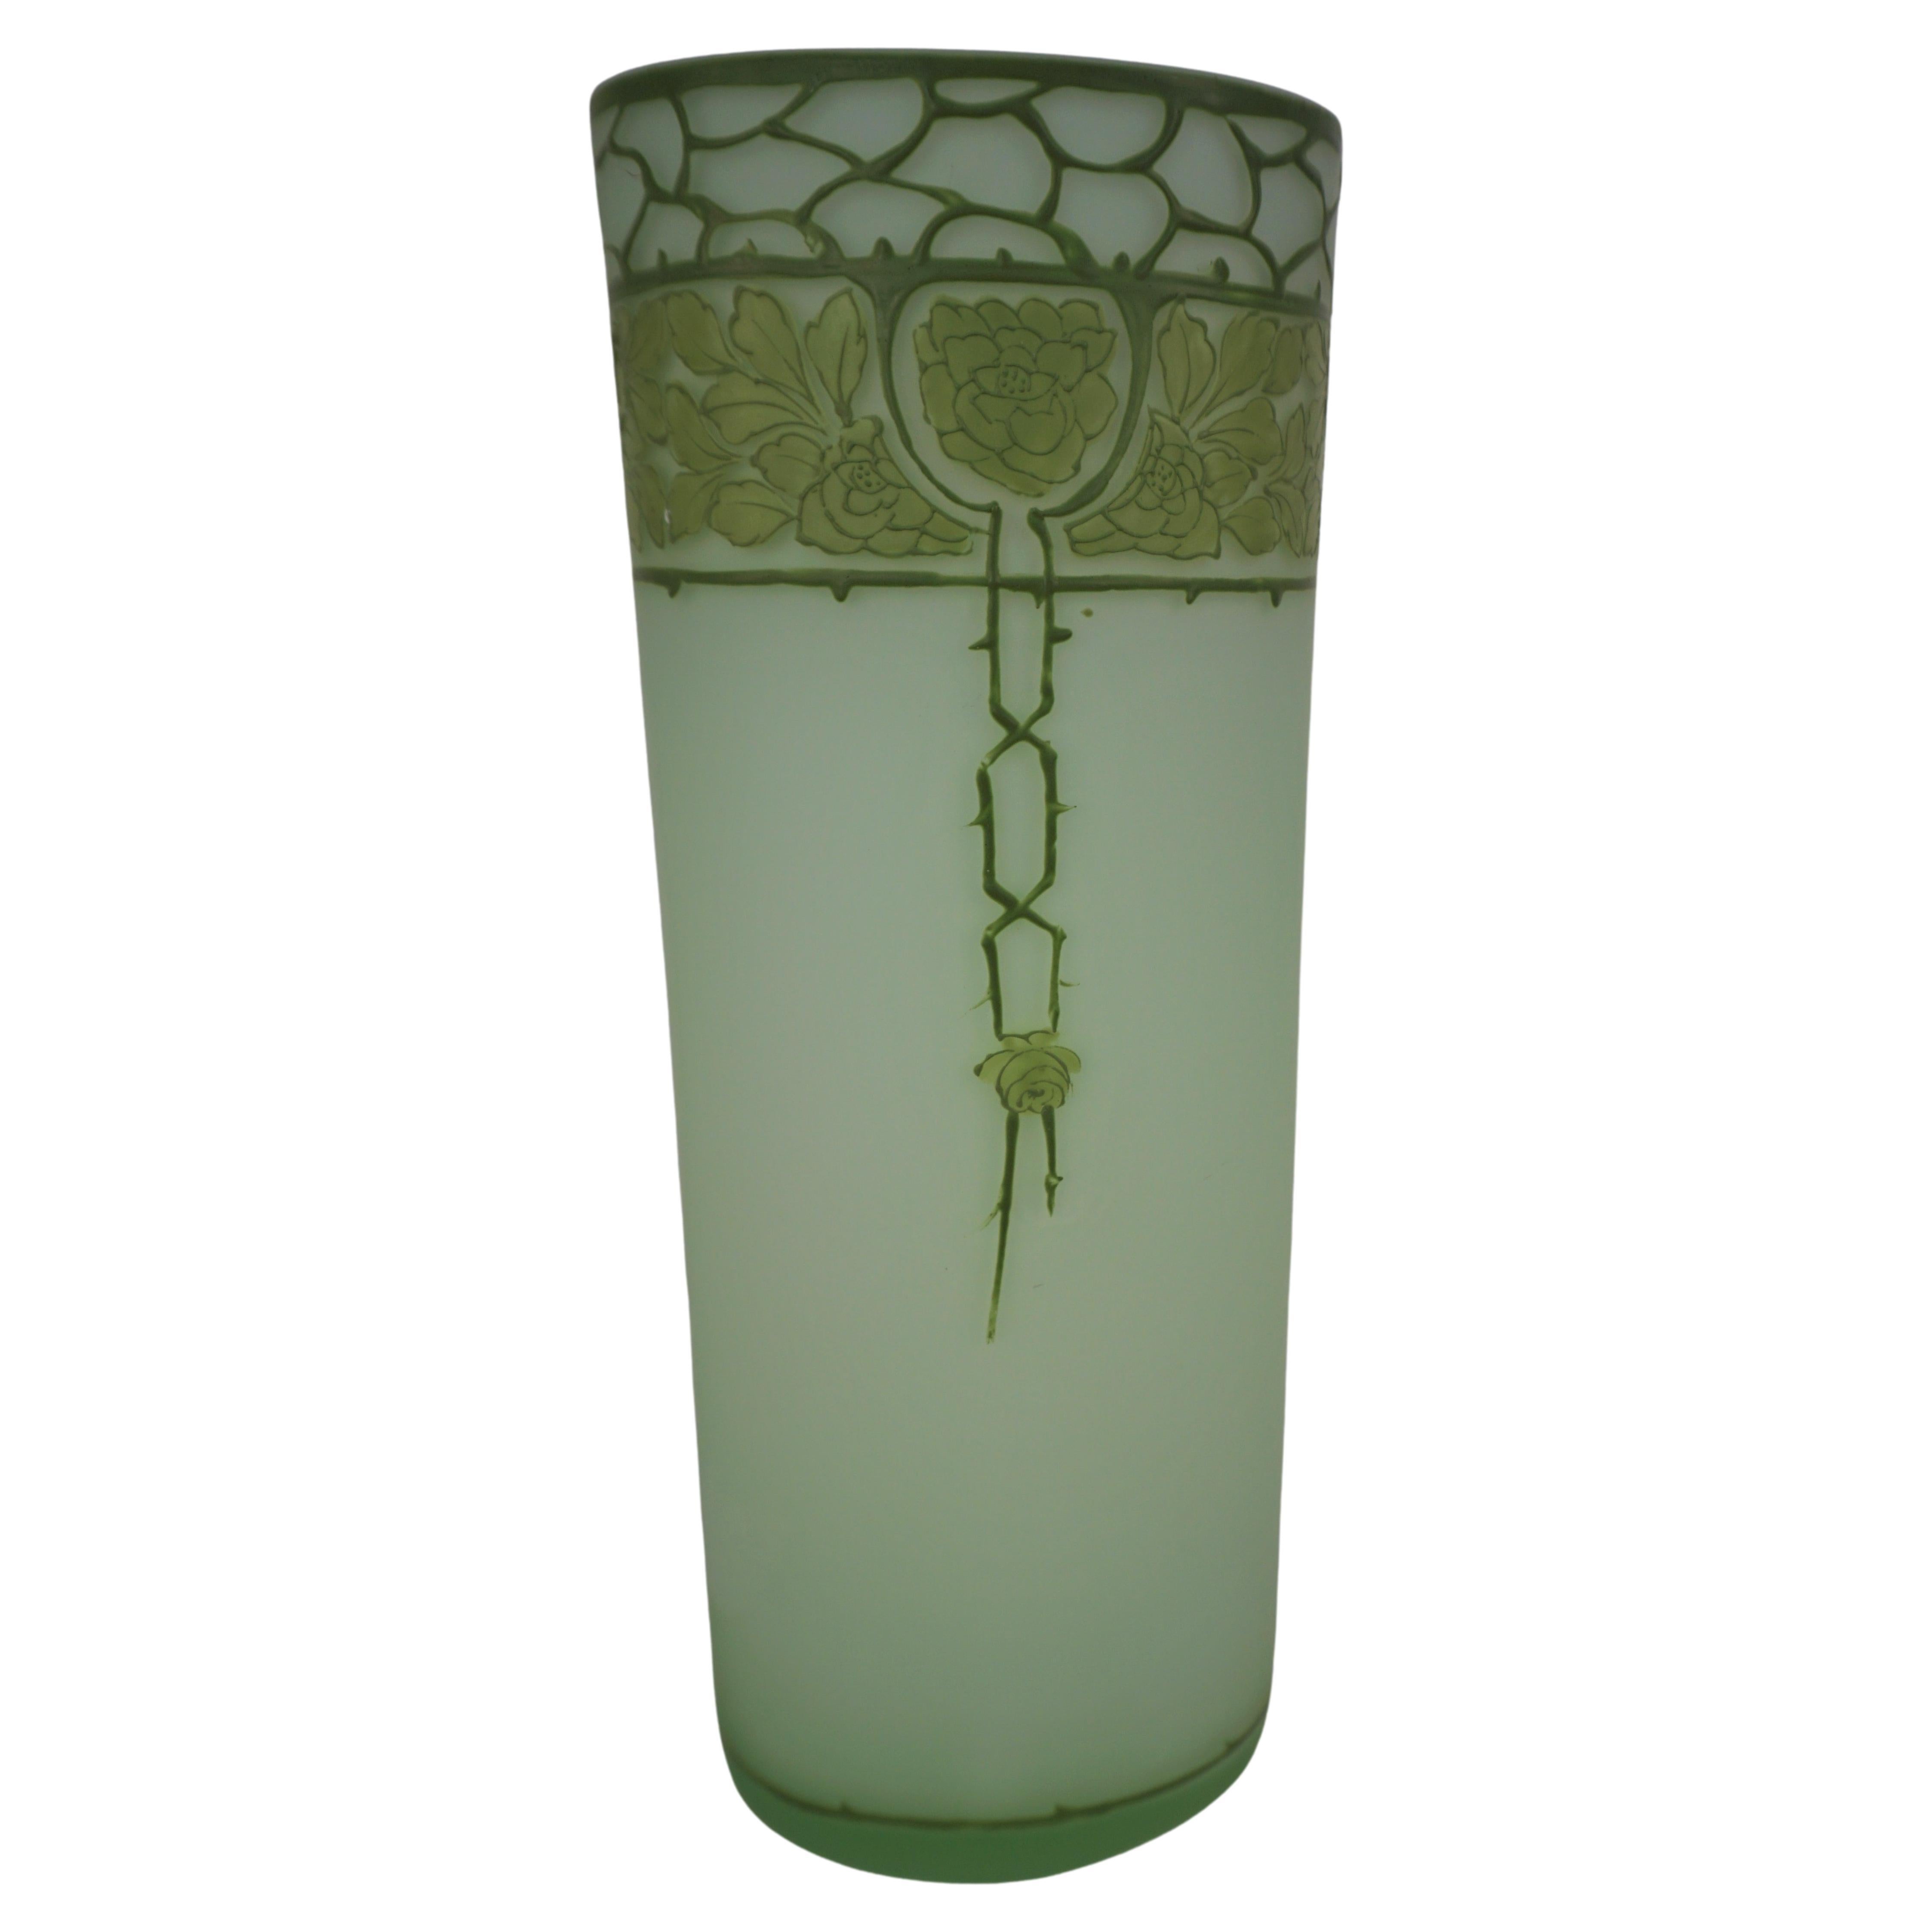  Art Nouveau  Jugendstil cameo glass vase For Sale